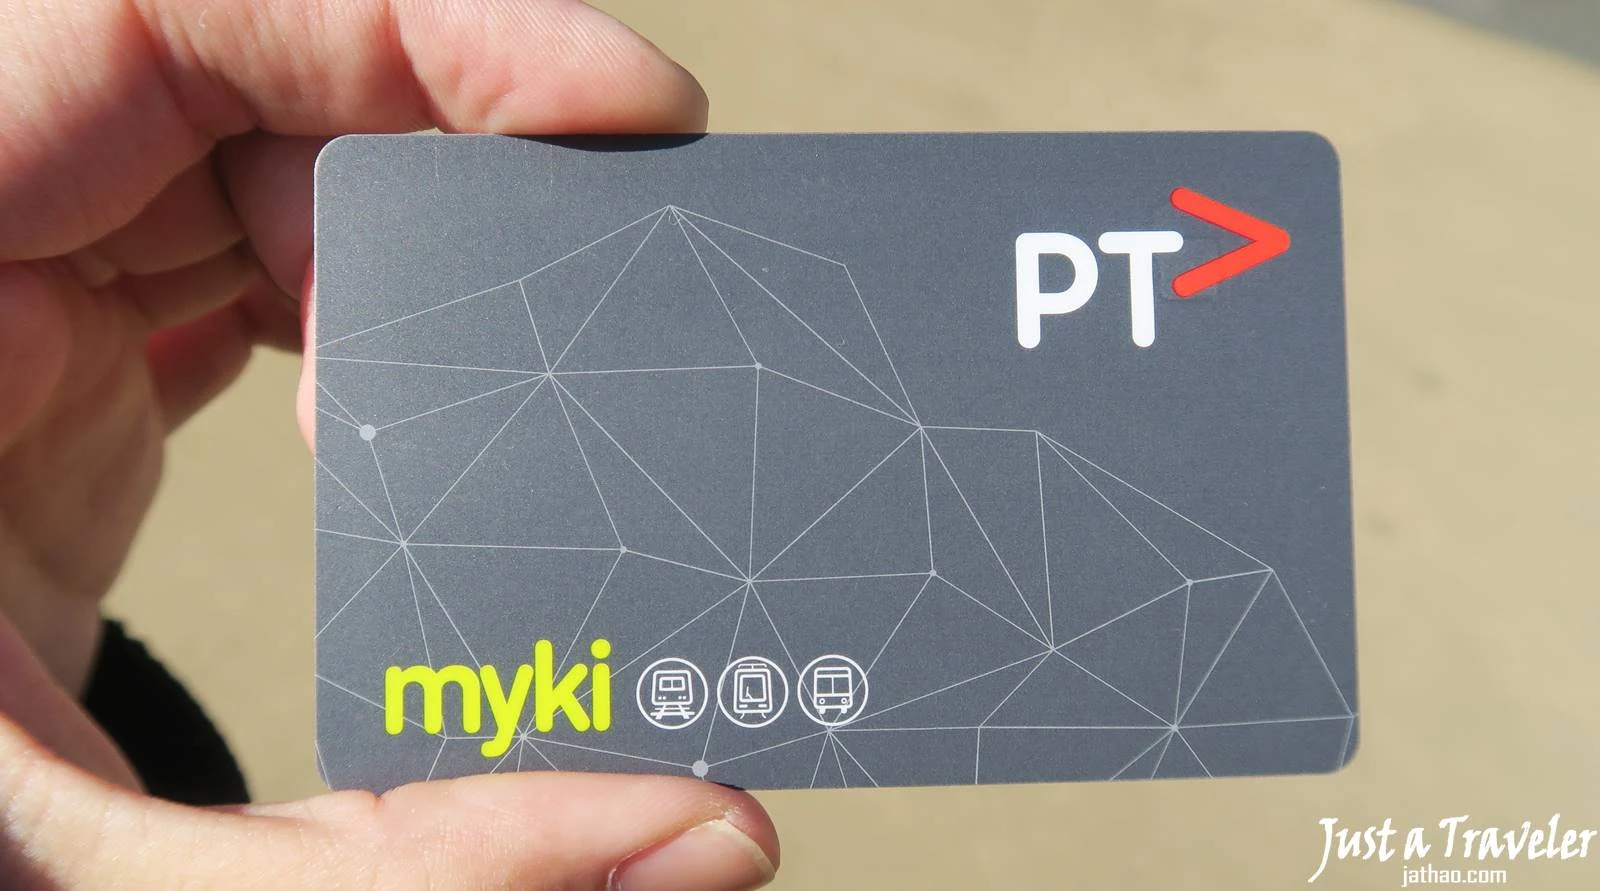 墨爾本-交通-myki-電車-火車-巴士-墨爾本交通攻略-墨爾本交通介紹-教學-搭乘-地圖-票價-melbourne-transport-tram-train-bus